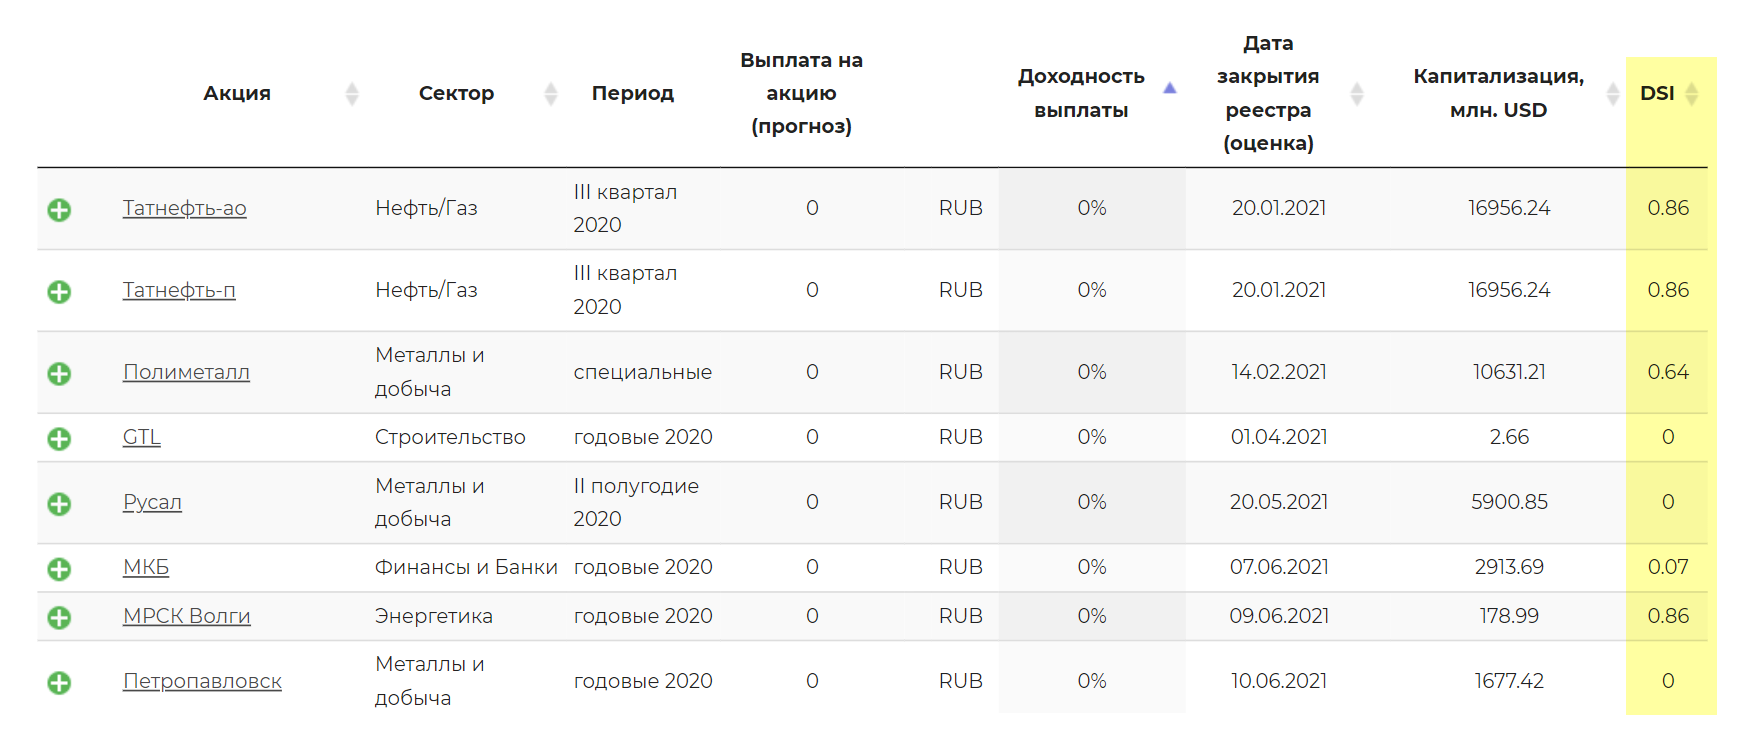 Значения индекса DSI для российских компаний на сайте dohod.ru